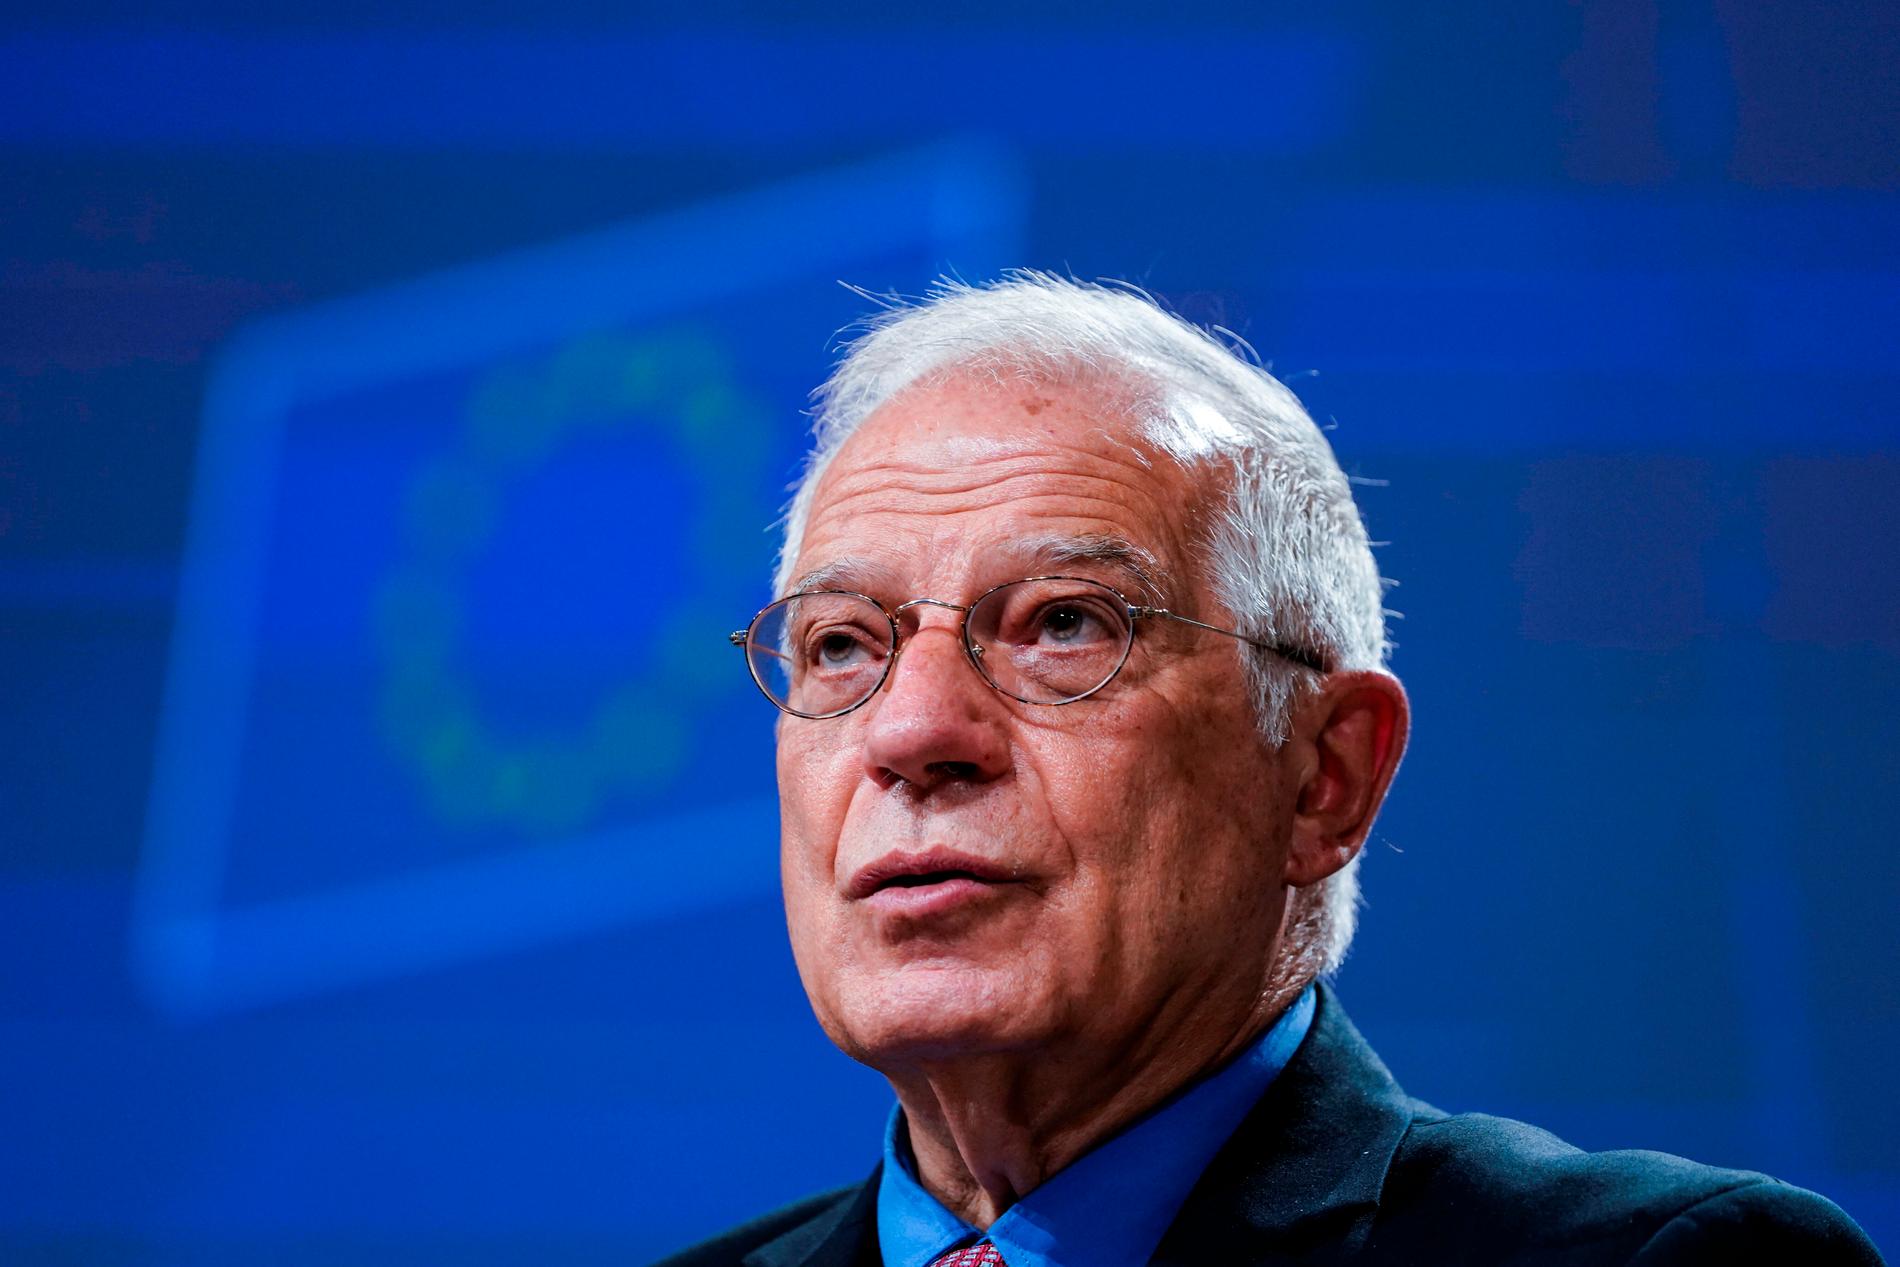 EU:s utrikeschef Josep Borrell varslar om förlängt inreseförbud in till EU. Arkivfoto.